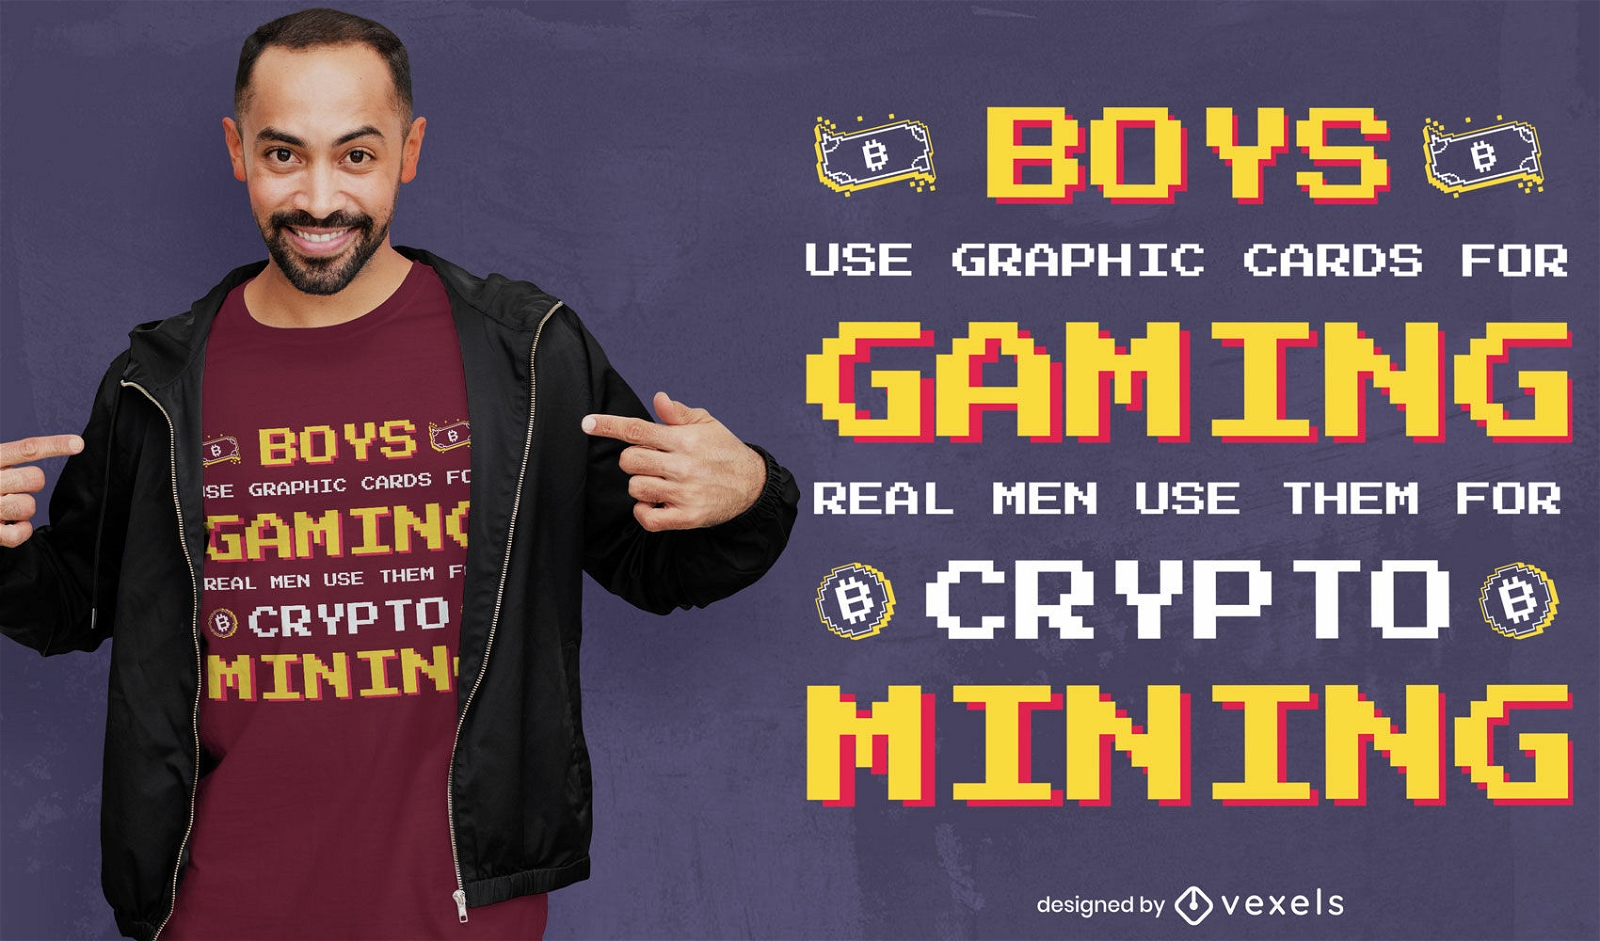 Gaming crypto mining t-shirt design